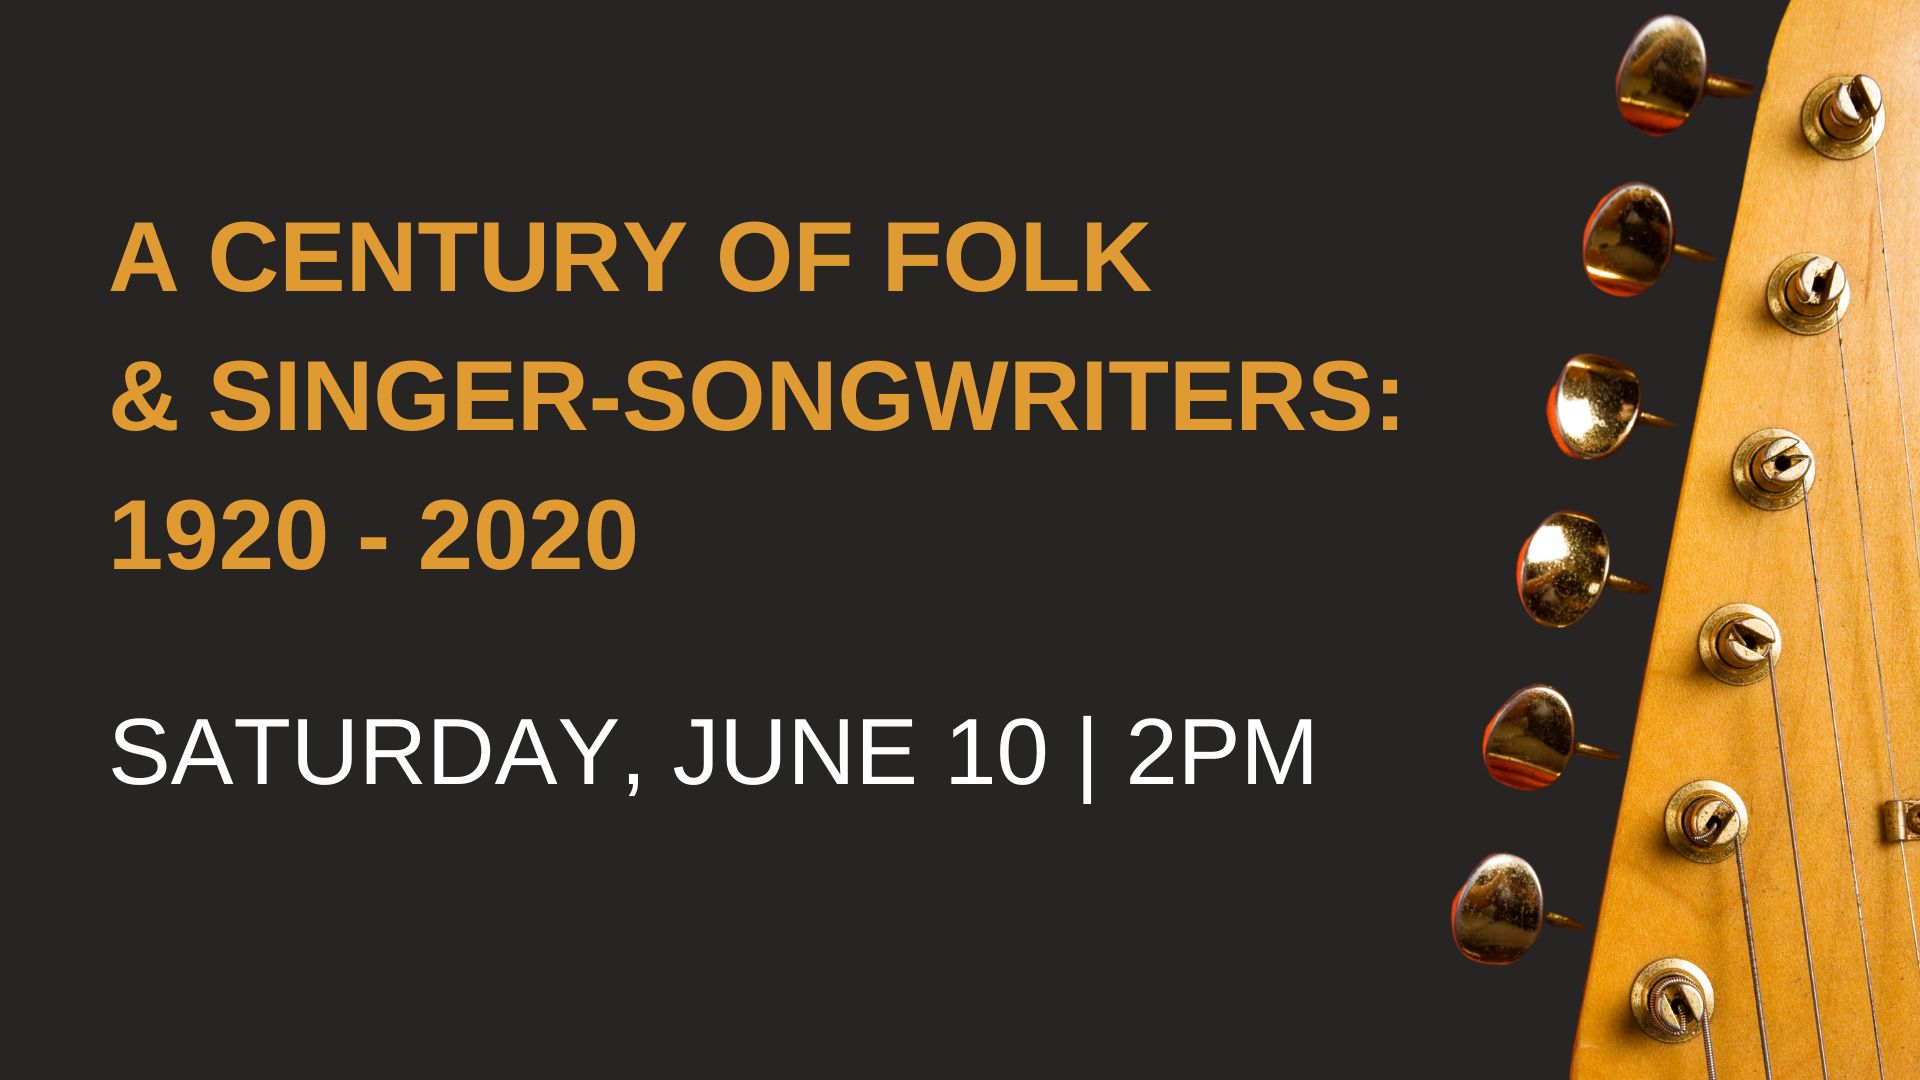 Folk singer-songwriters